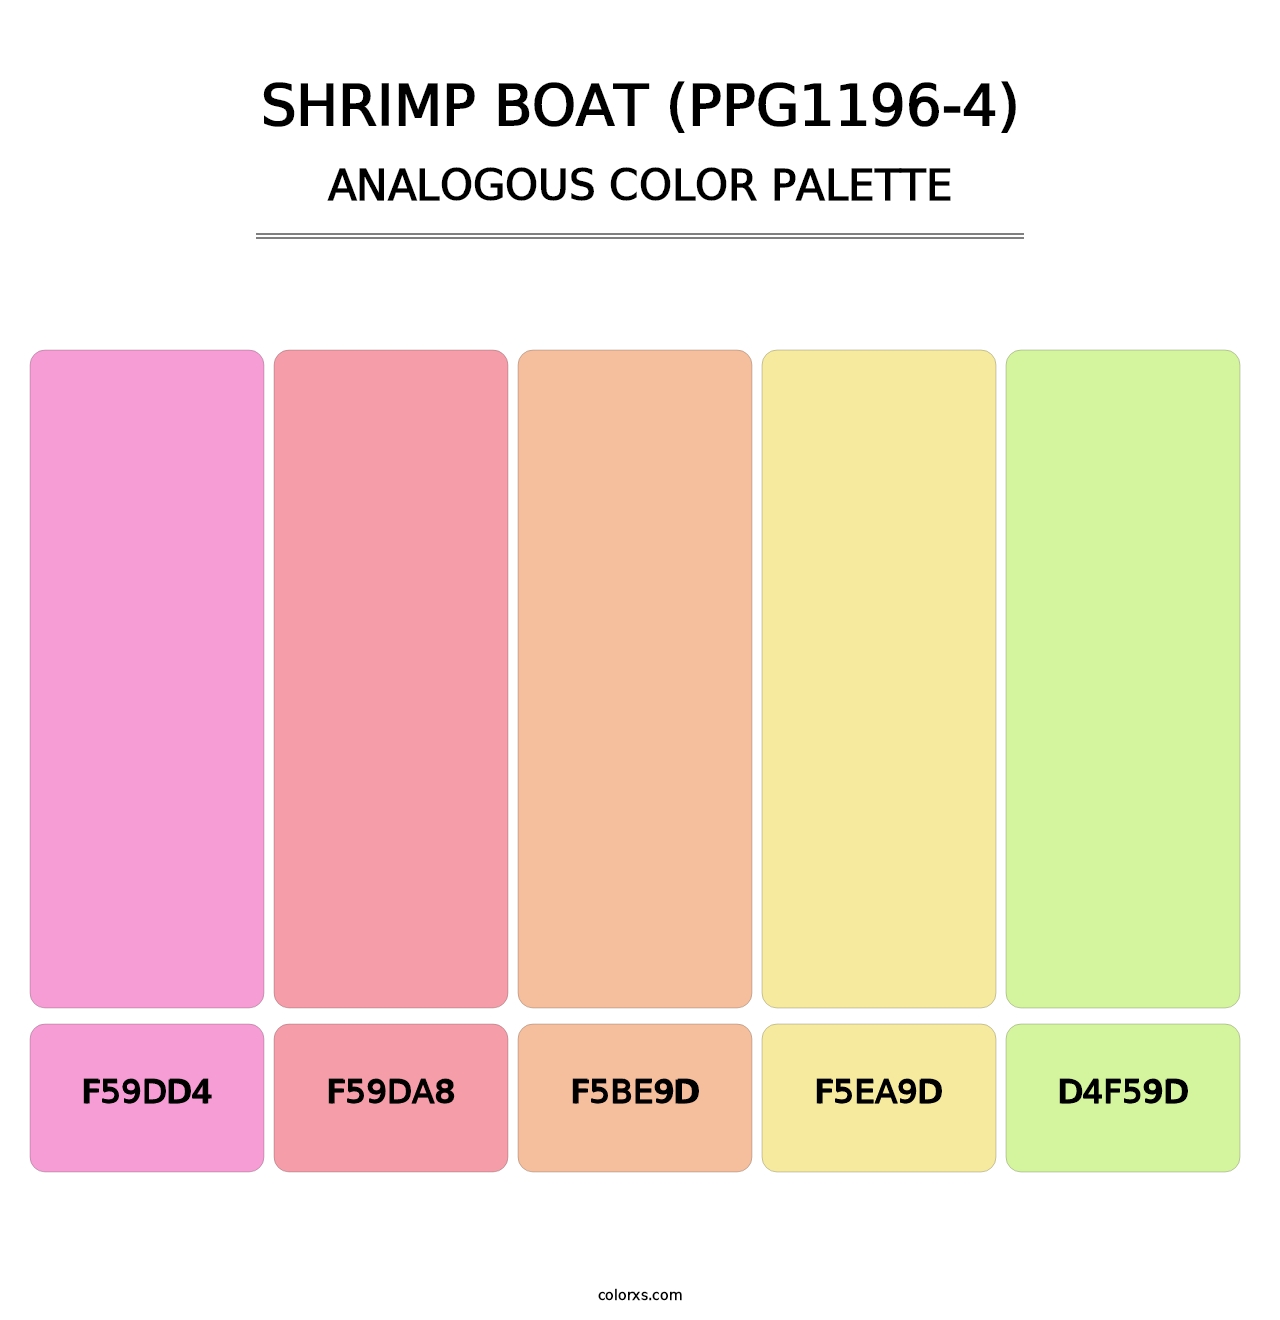 Shrimp Boat (PPG1196-4) - Analogous Color Palette